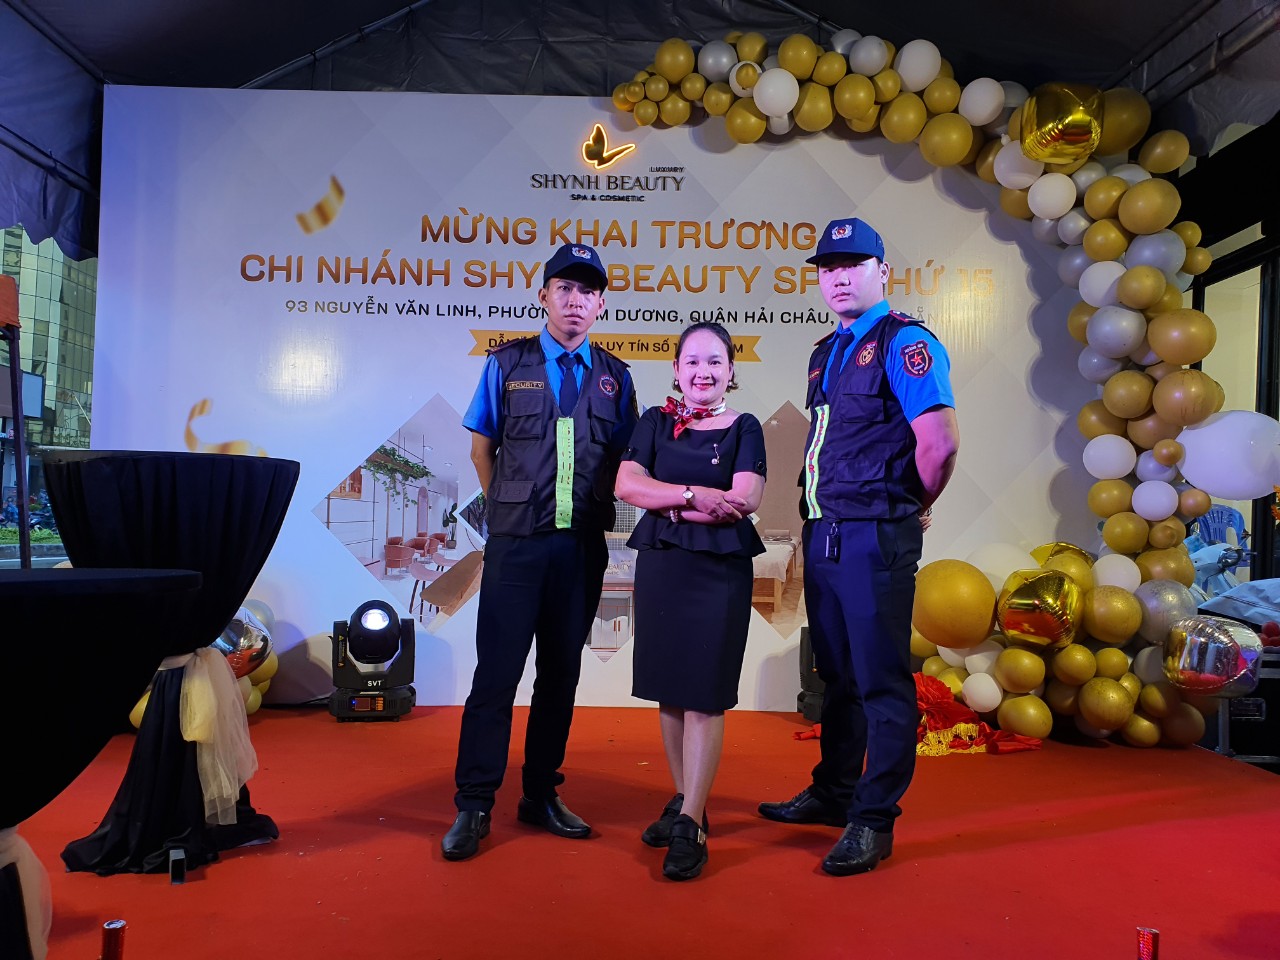 Vì sao nên thuê dịch vụ bảo vệ sự kiện chuyên nghiệp tại Đà Nẵng?